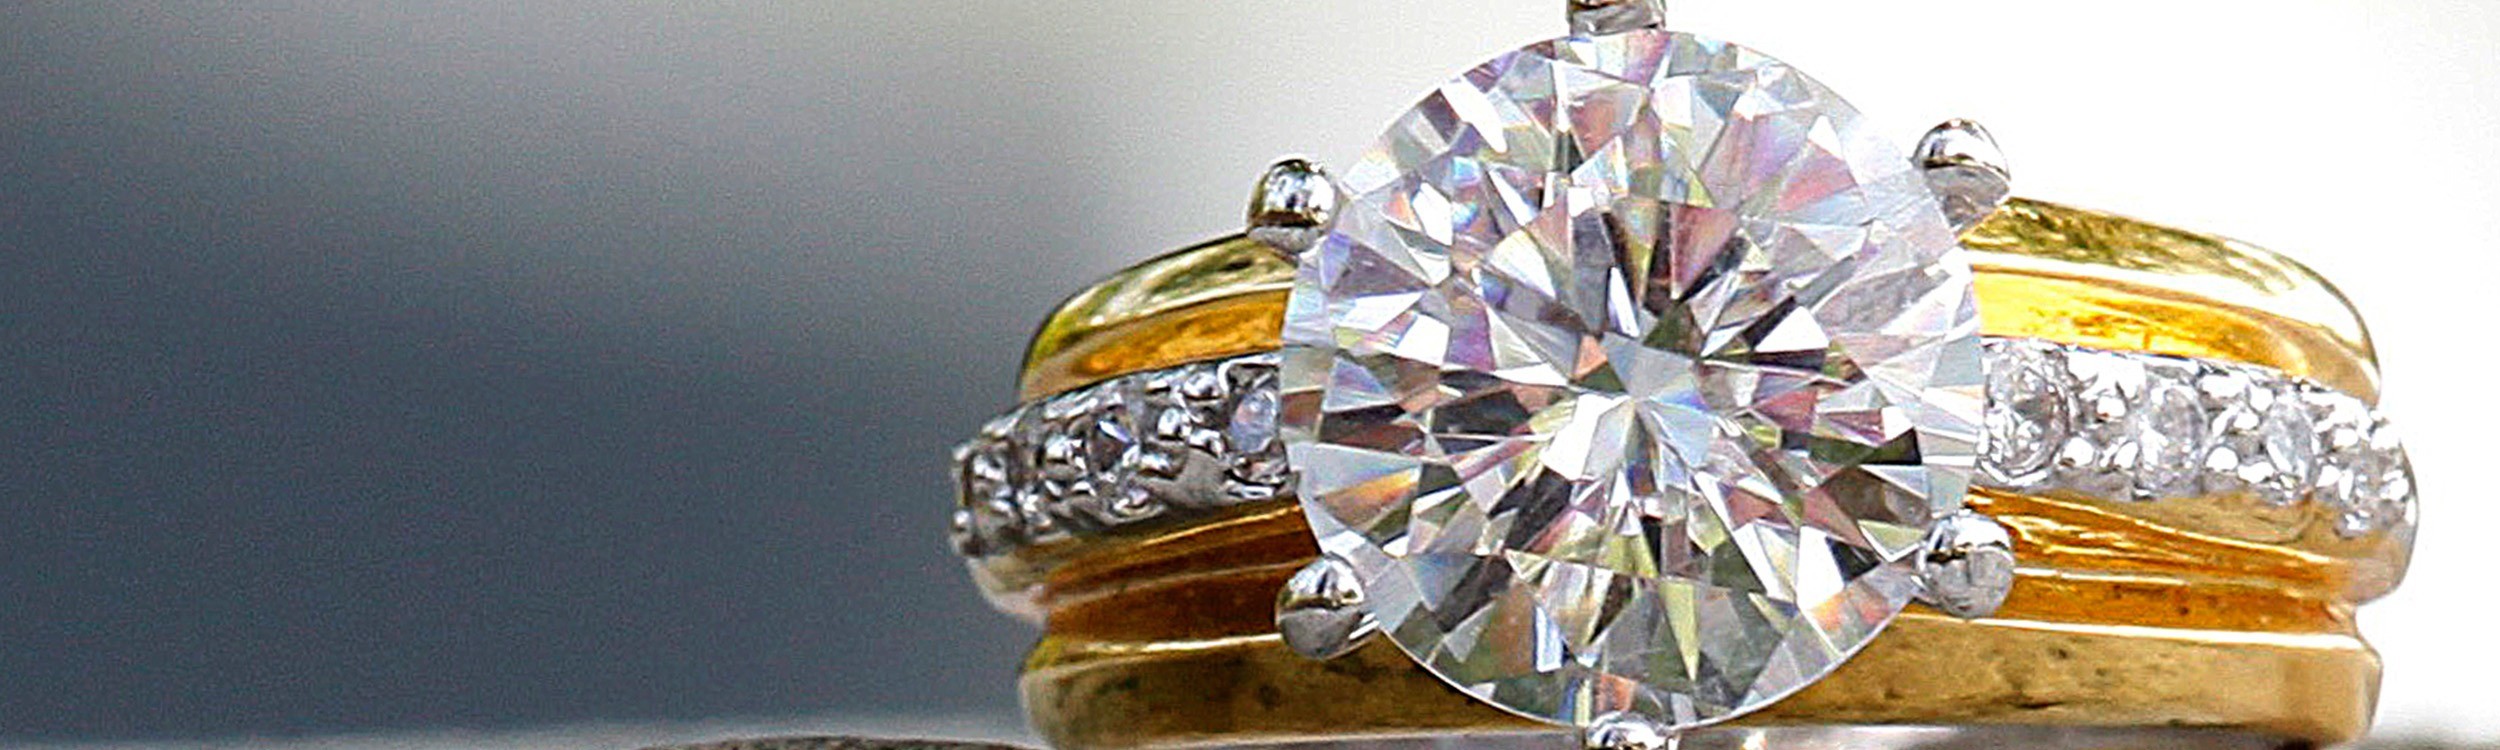 closeup of diamond ring